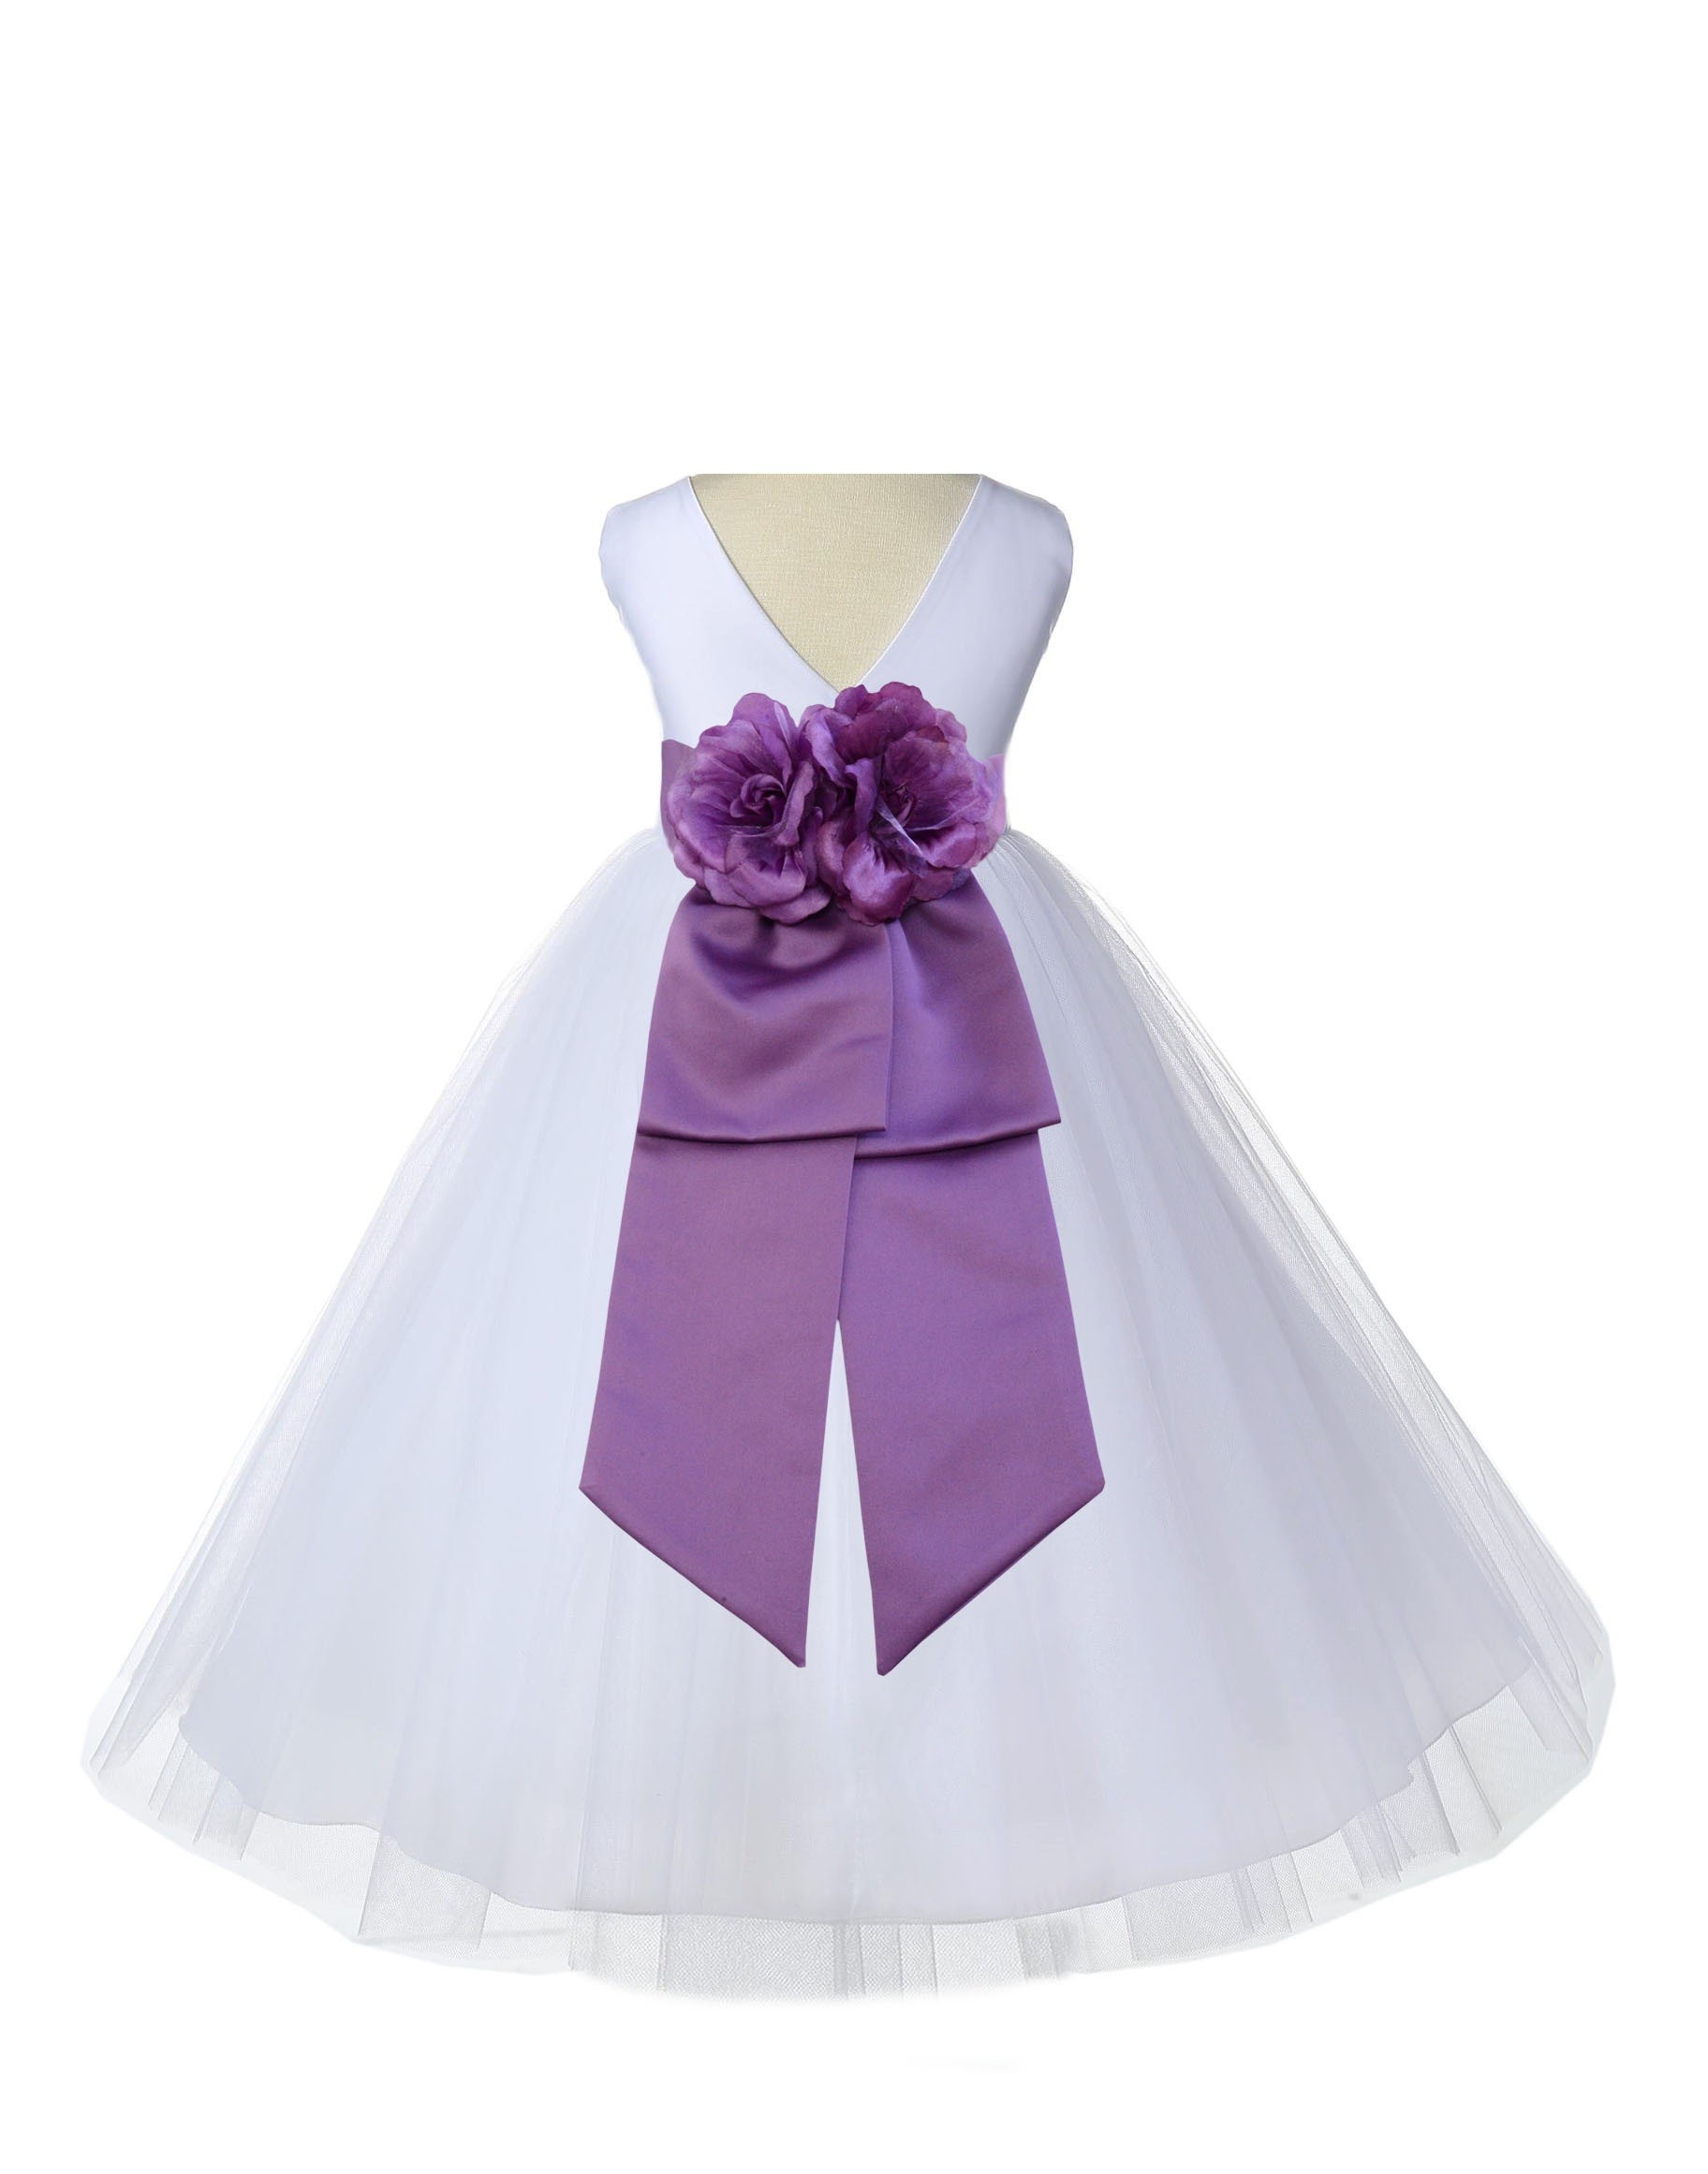 V-Neck Tulle White/Wisteria Flower Girl Dress Wedding Pageant 108